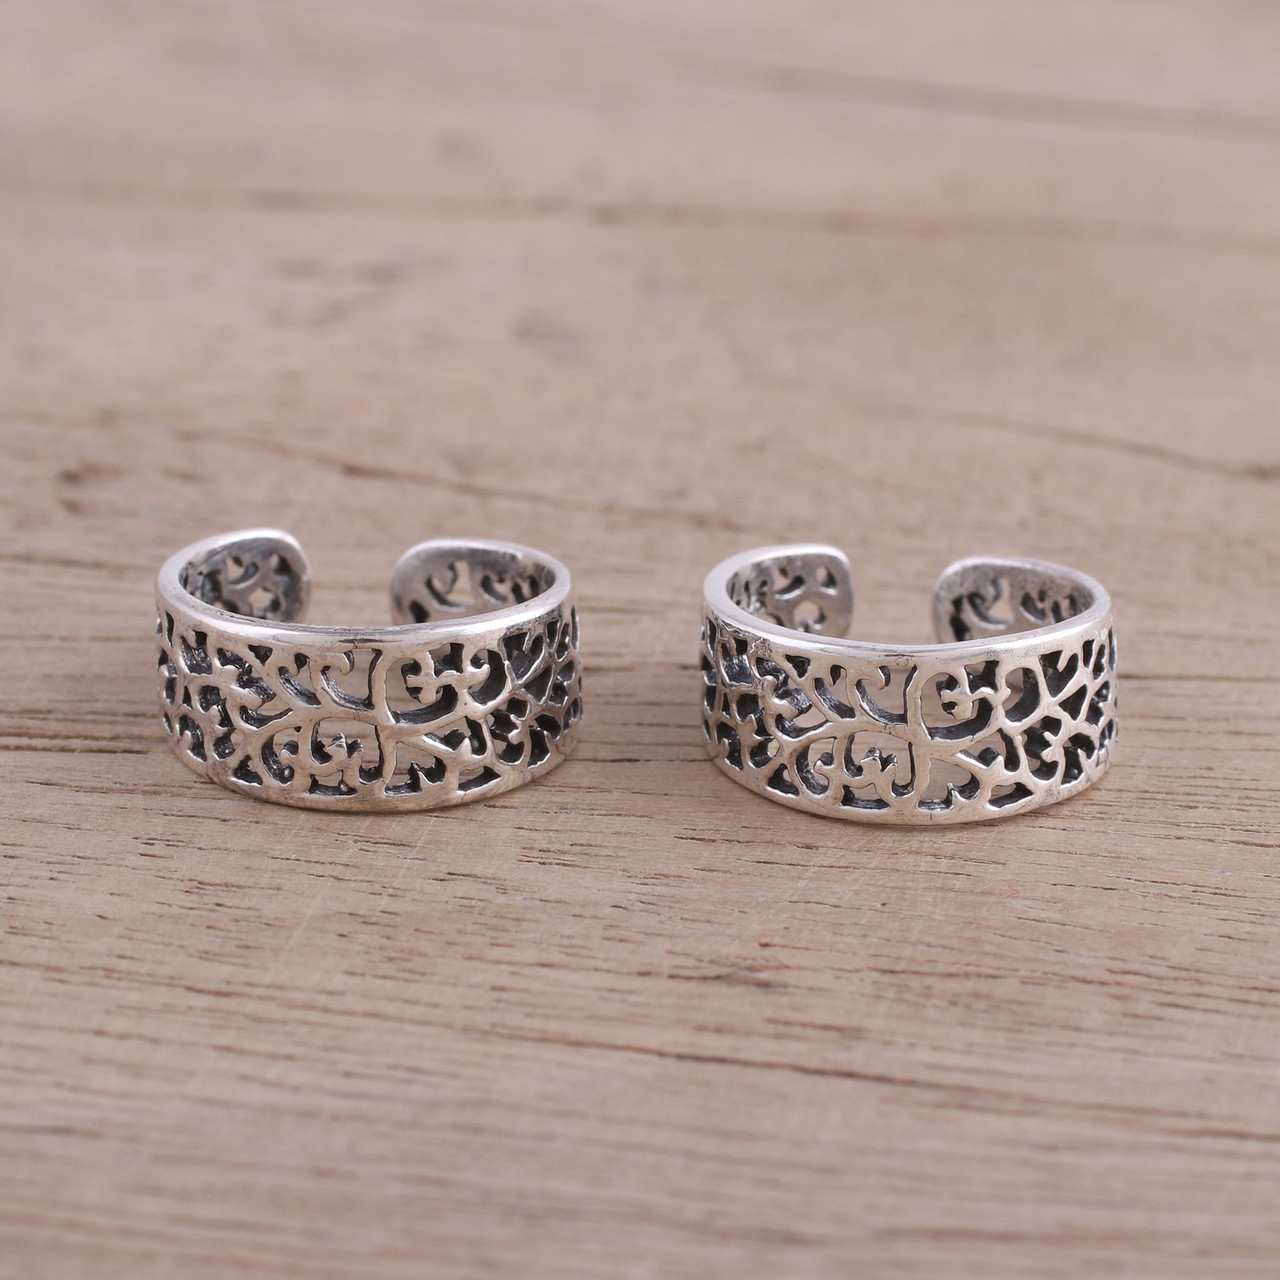 Toe rings | Toe ring designs, Silver toe rings, Toe rings